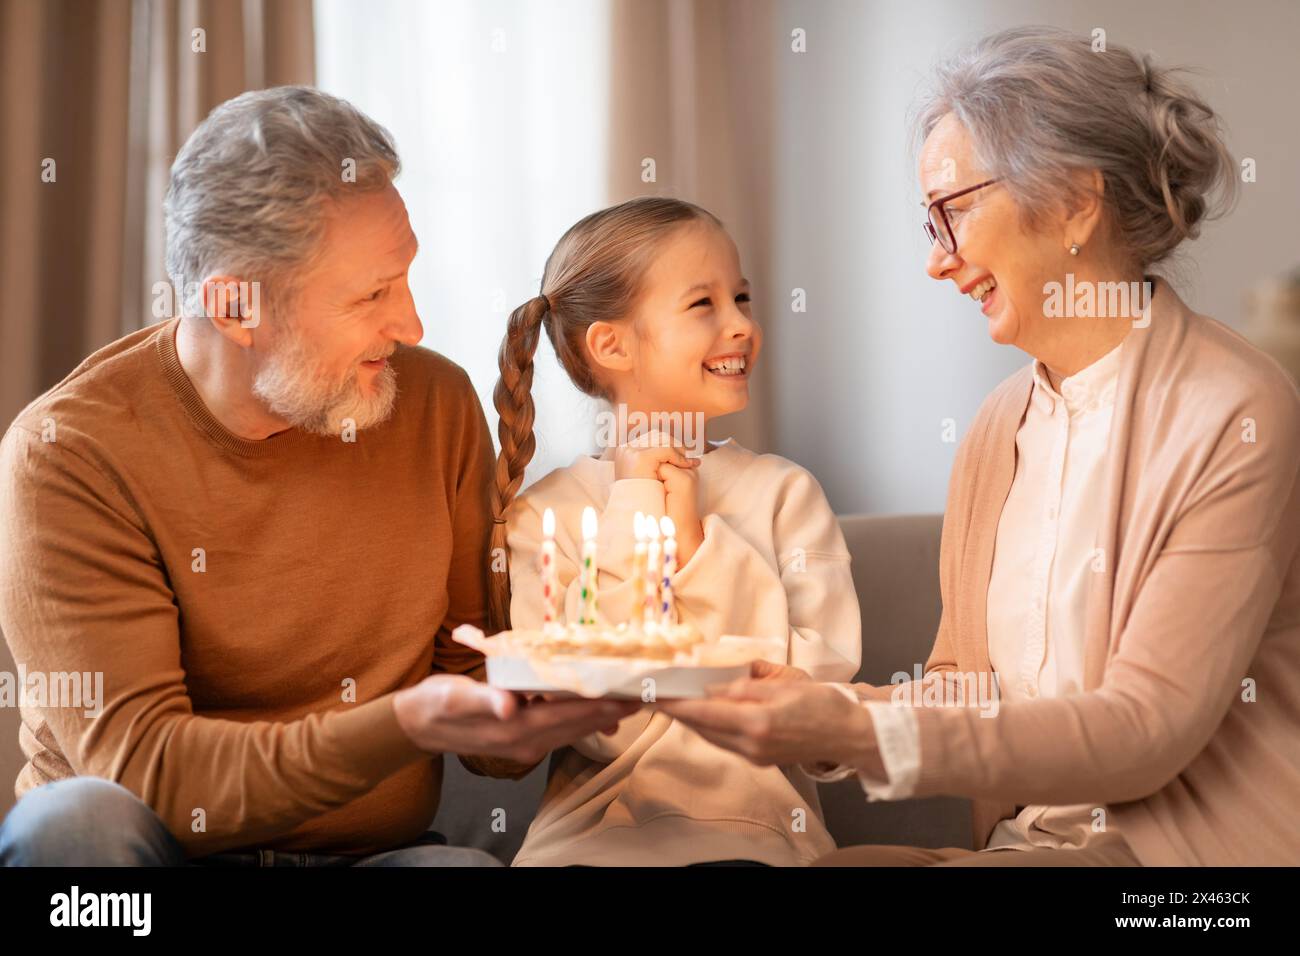 Smiling Girl celebra il compleanno con i nonni in una casa accogliente Foto Stock